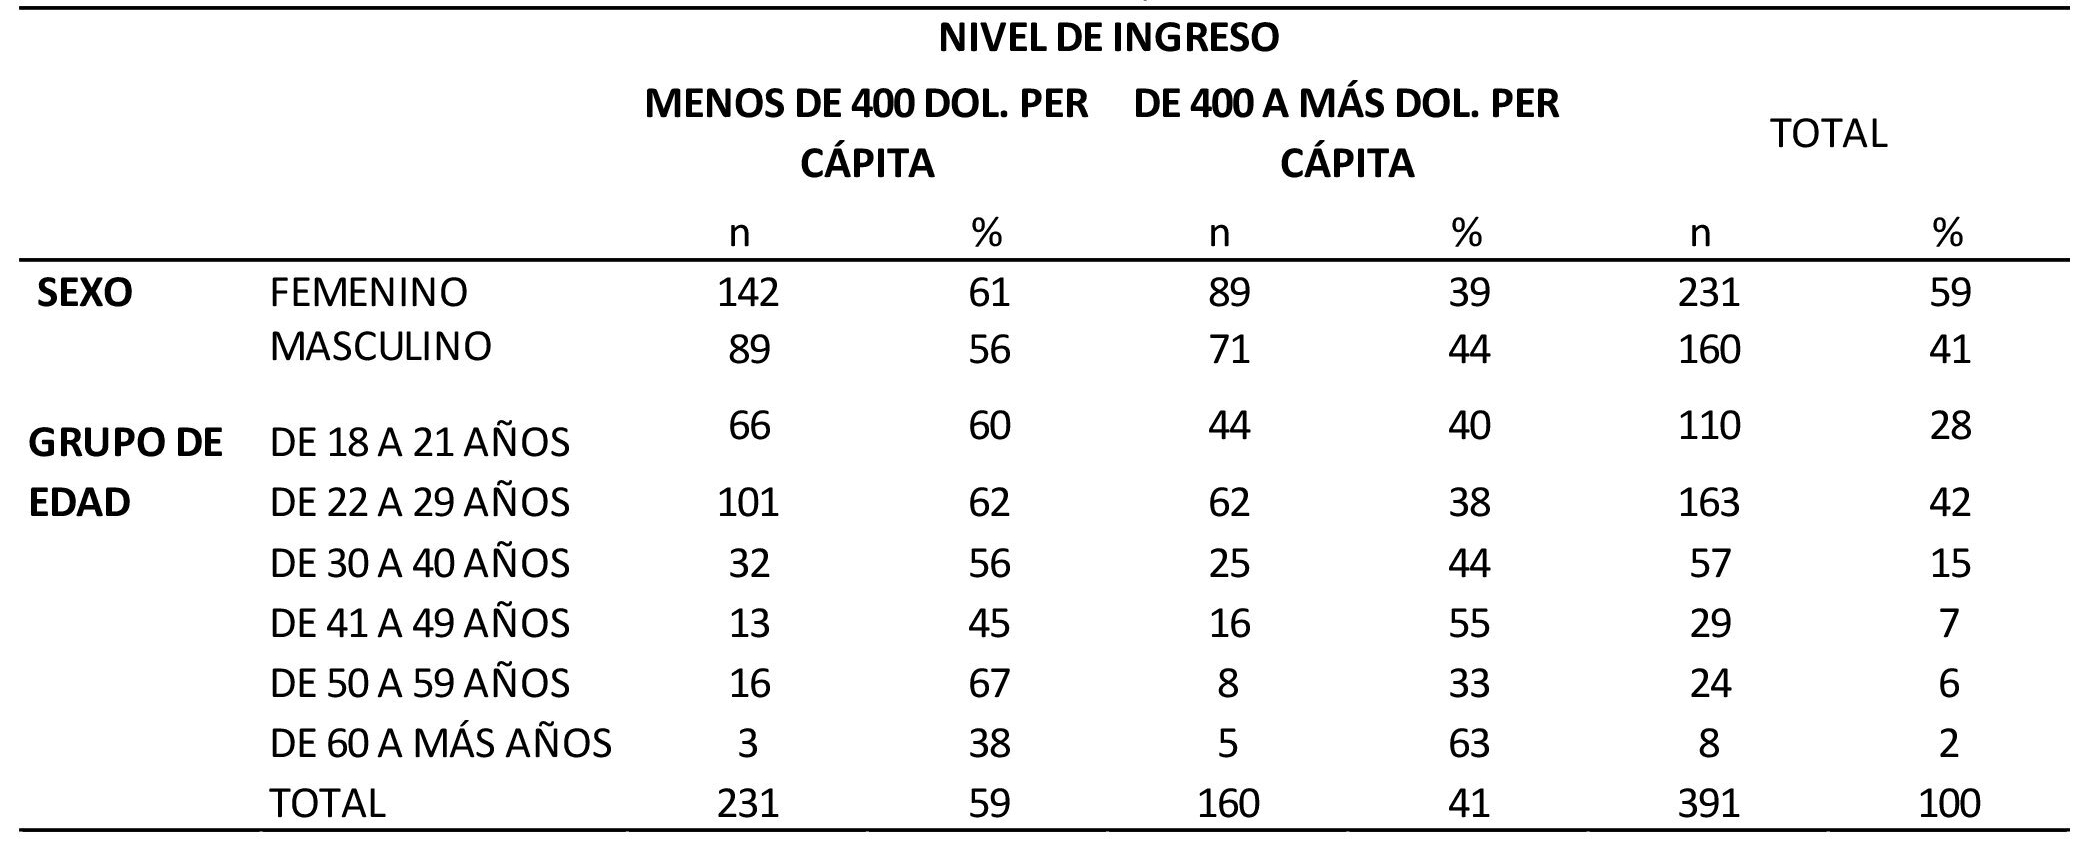 Distribución de la muestra de acuerdo a
sexo, grupo de edad y nivel de ingreso